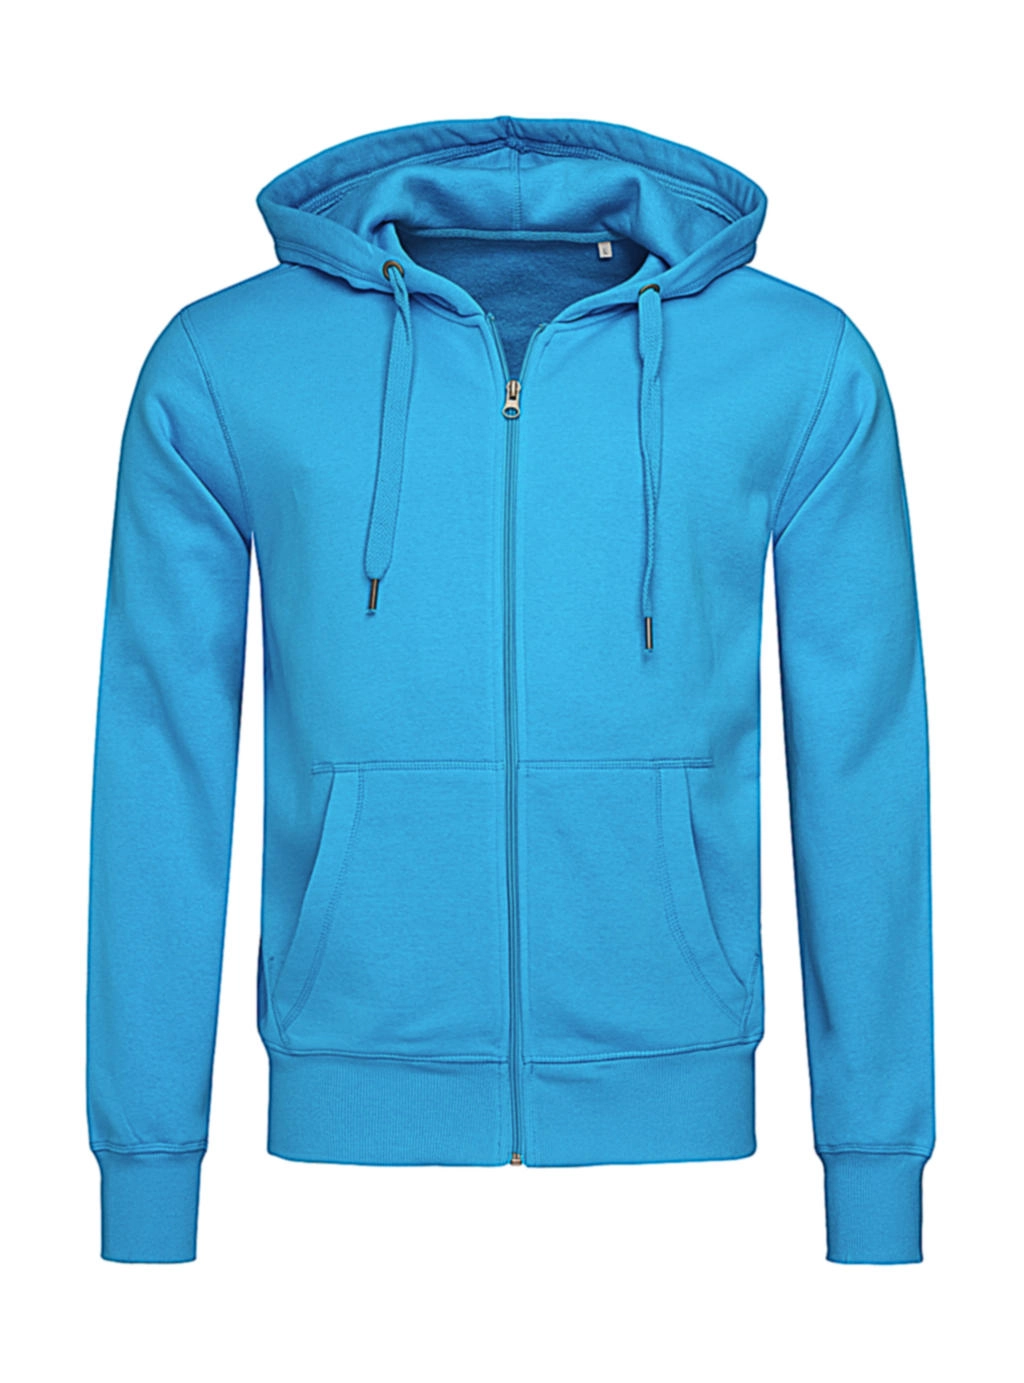 Sweat Jacket Select zum Besticken und Bedrucken in der Farbe Hawaii Blue mit Ihren Logo, Schriftzug oder Motiv.